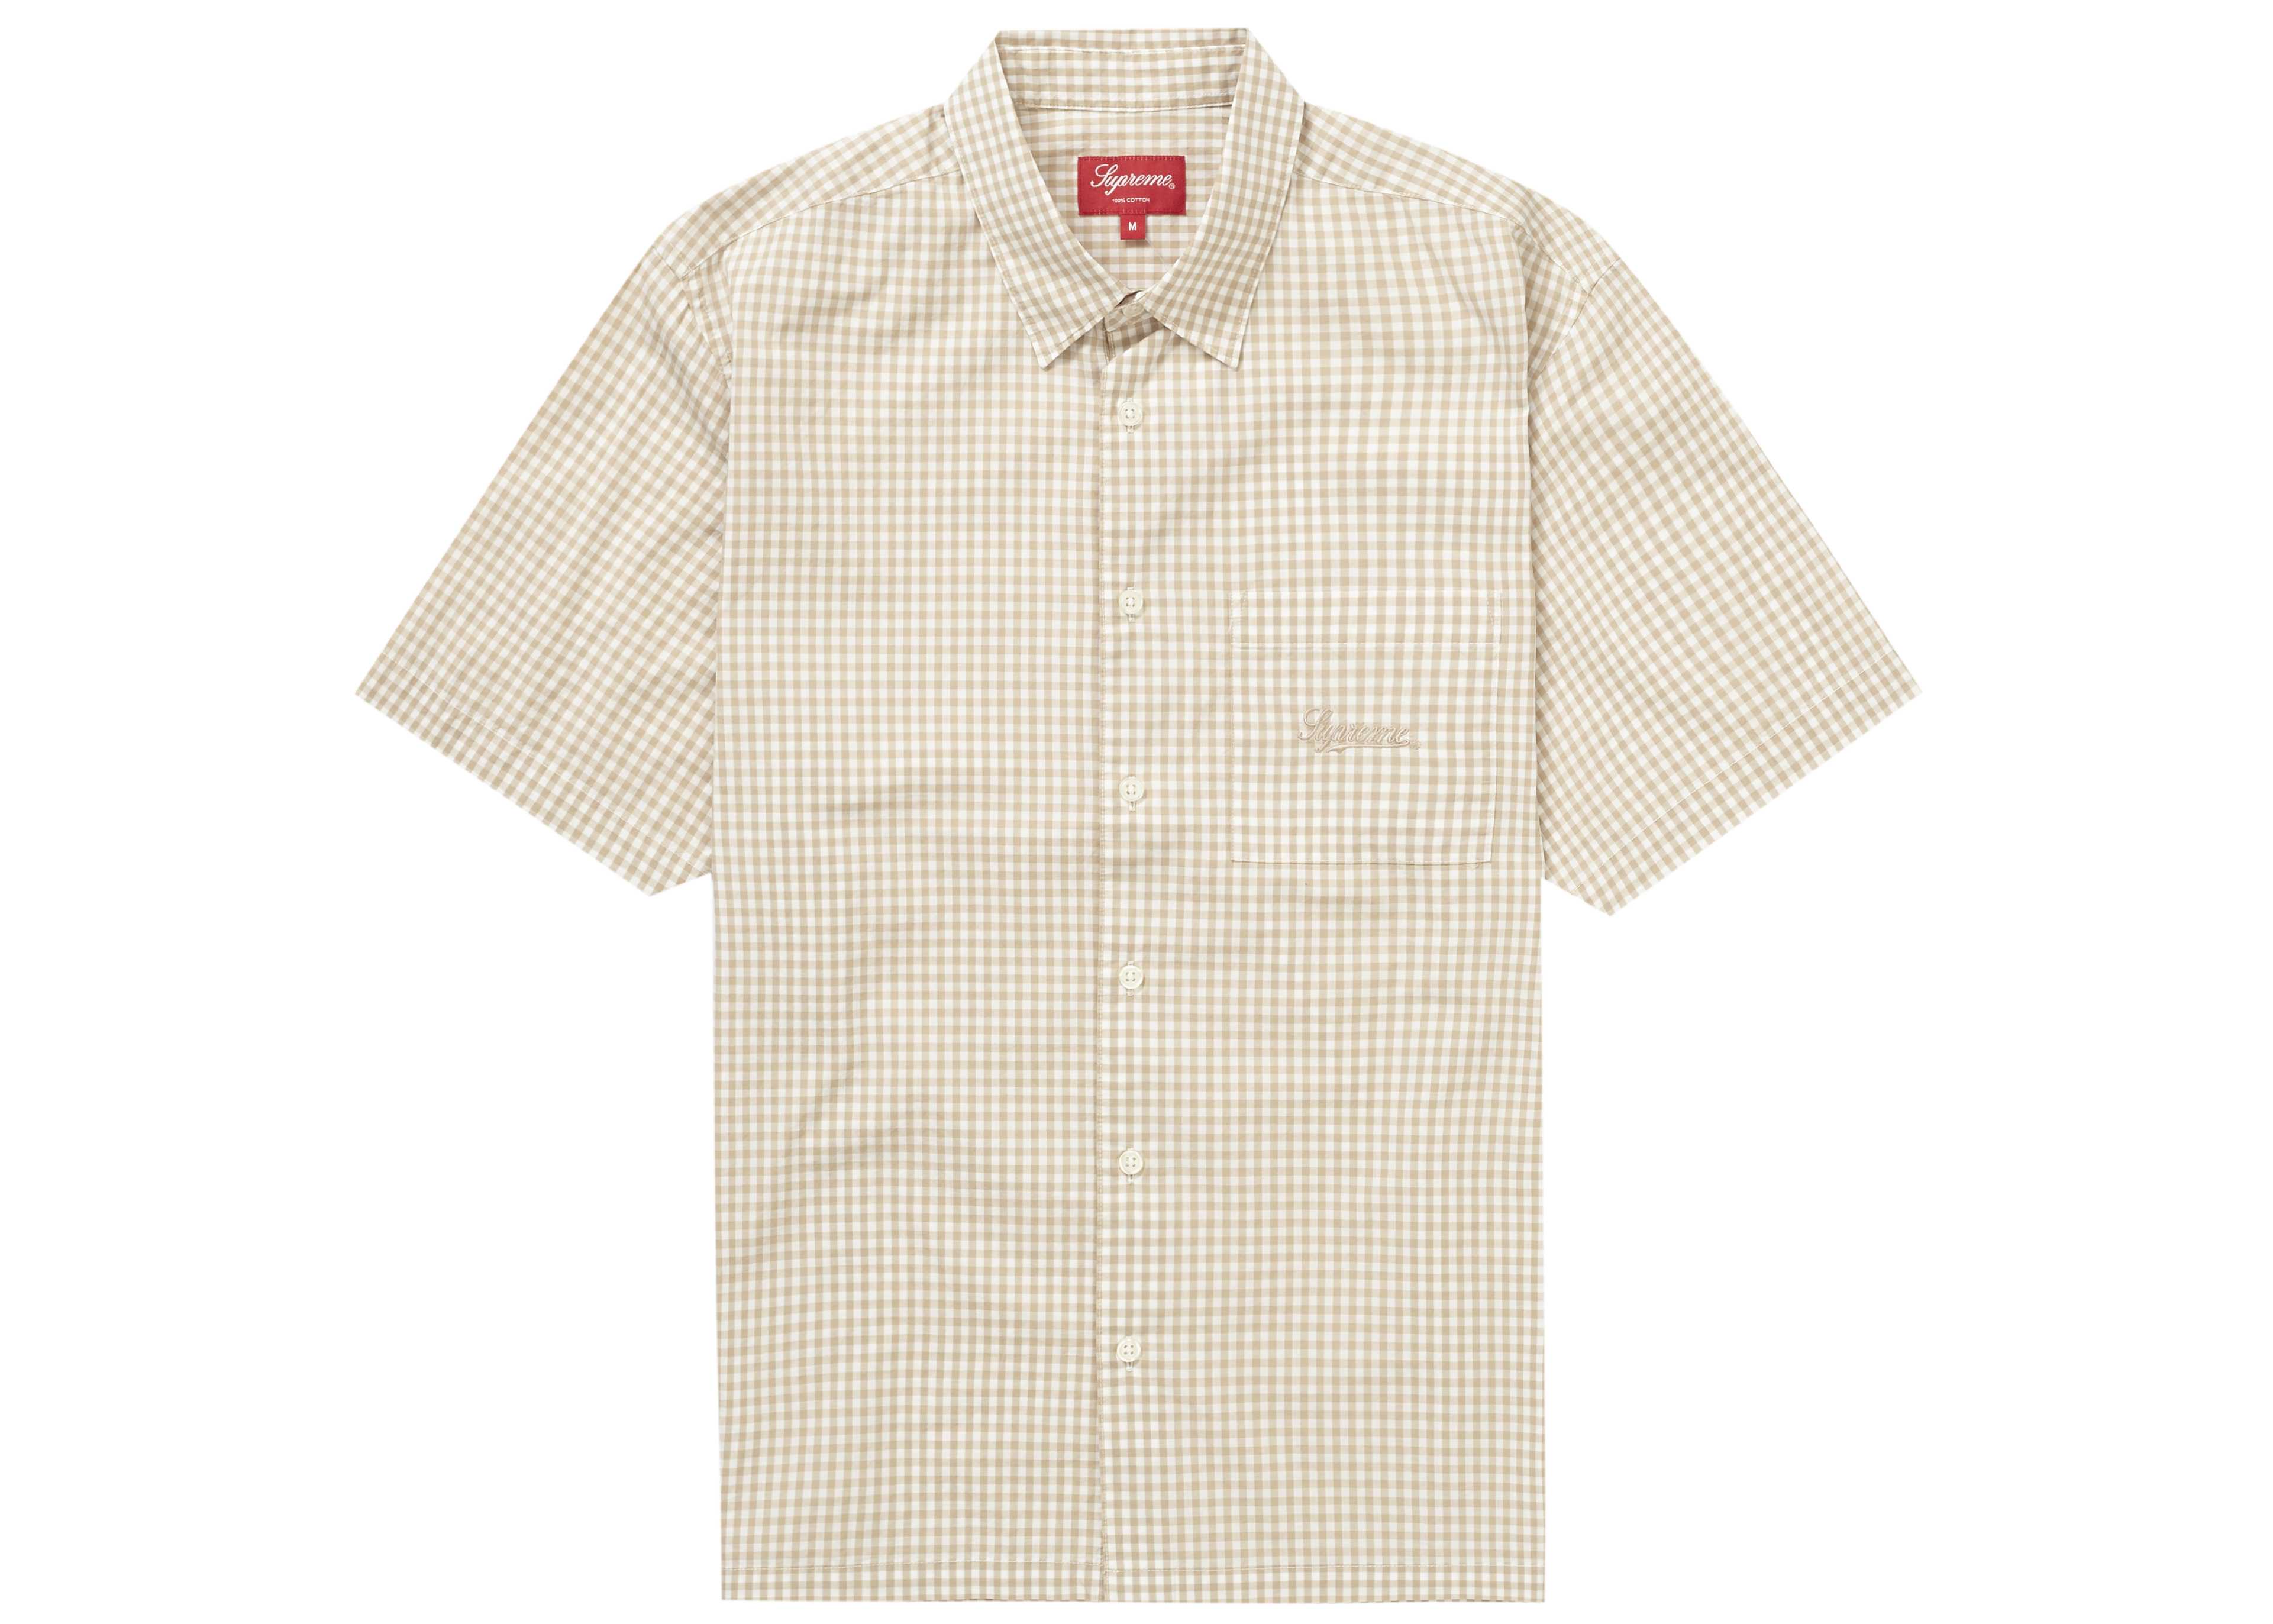 Supreme Gingham S/S Shirt Tan - SS21 - US